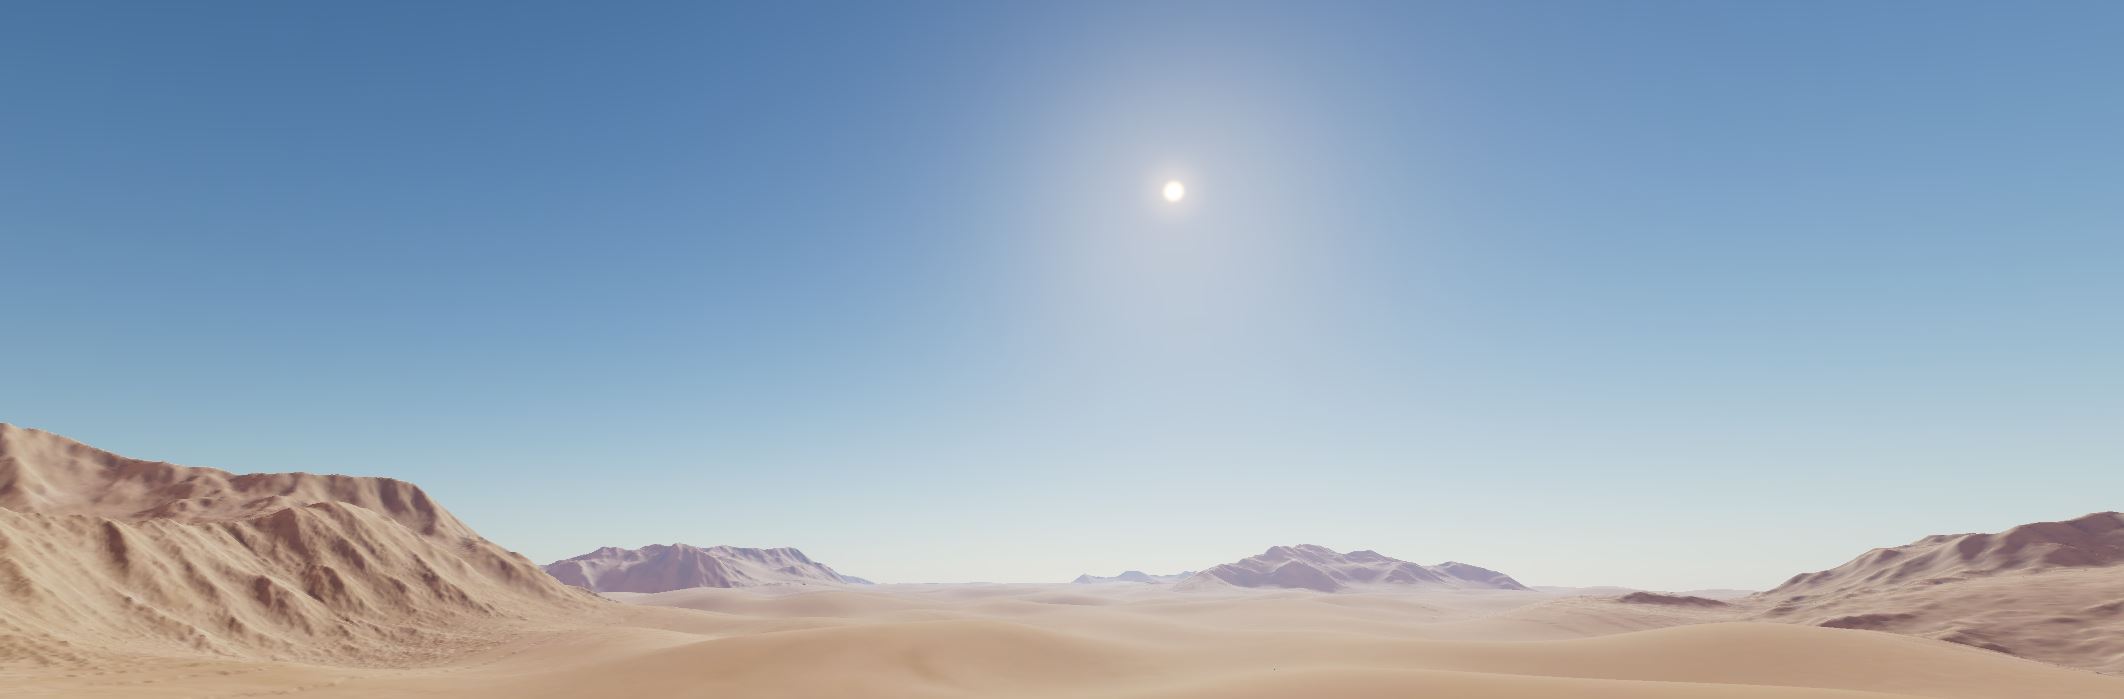 Sky atmosphere in desert mountain scene